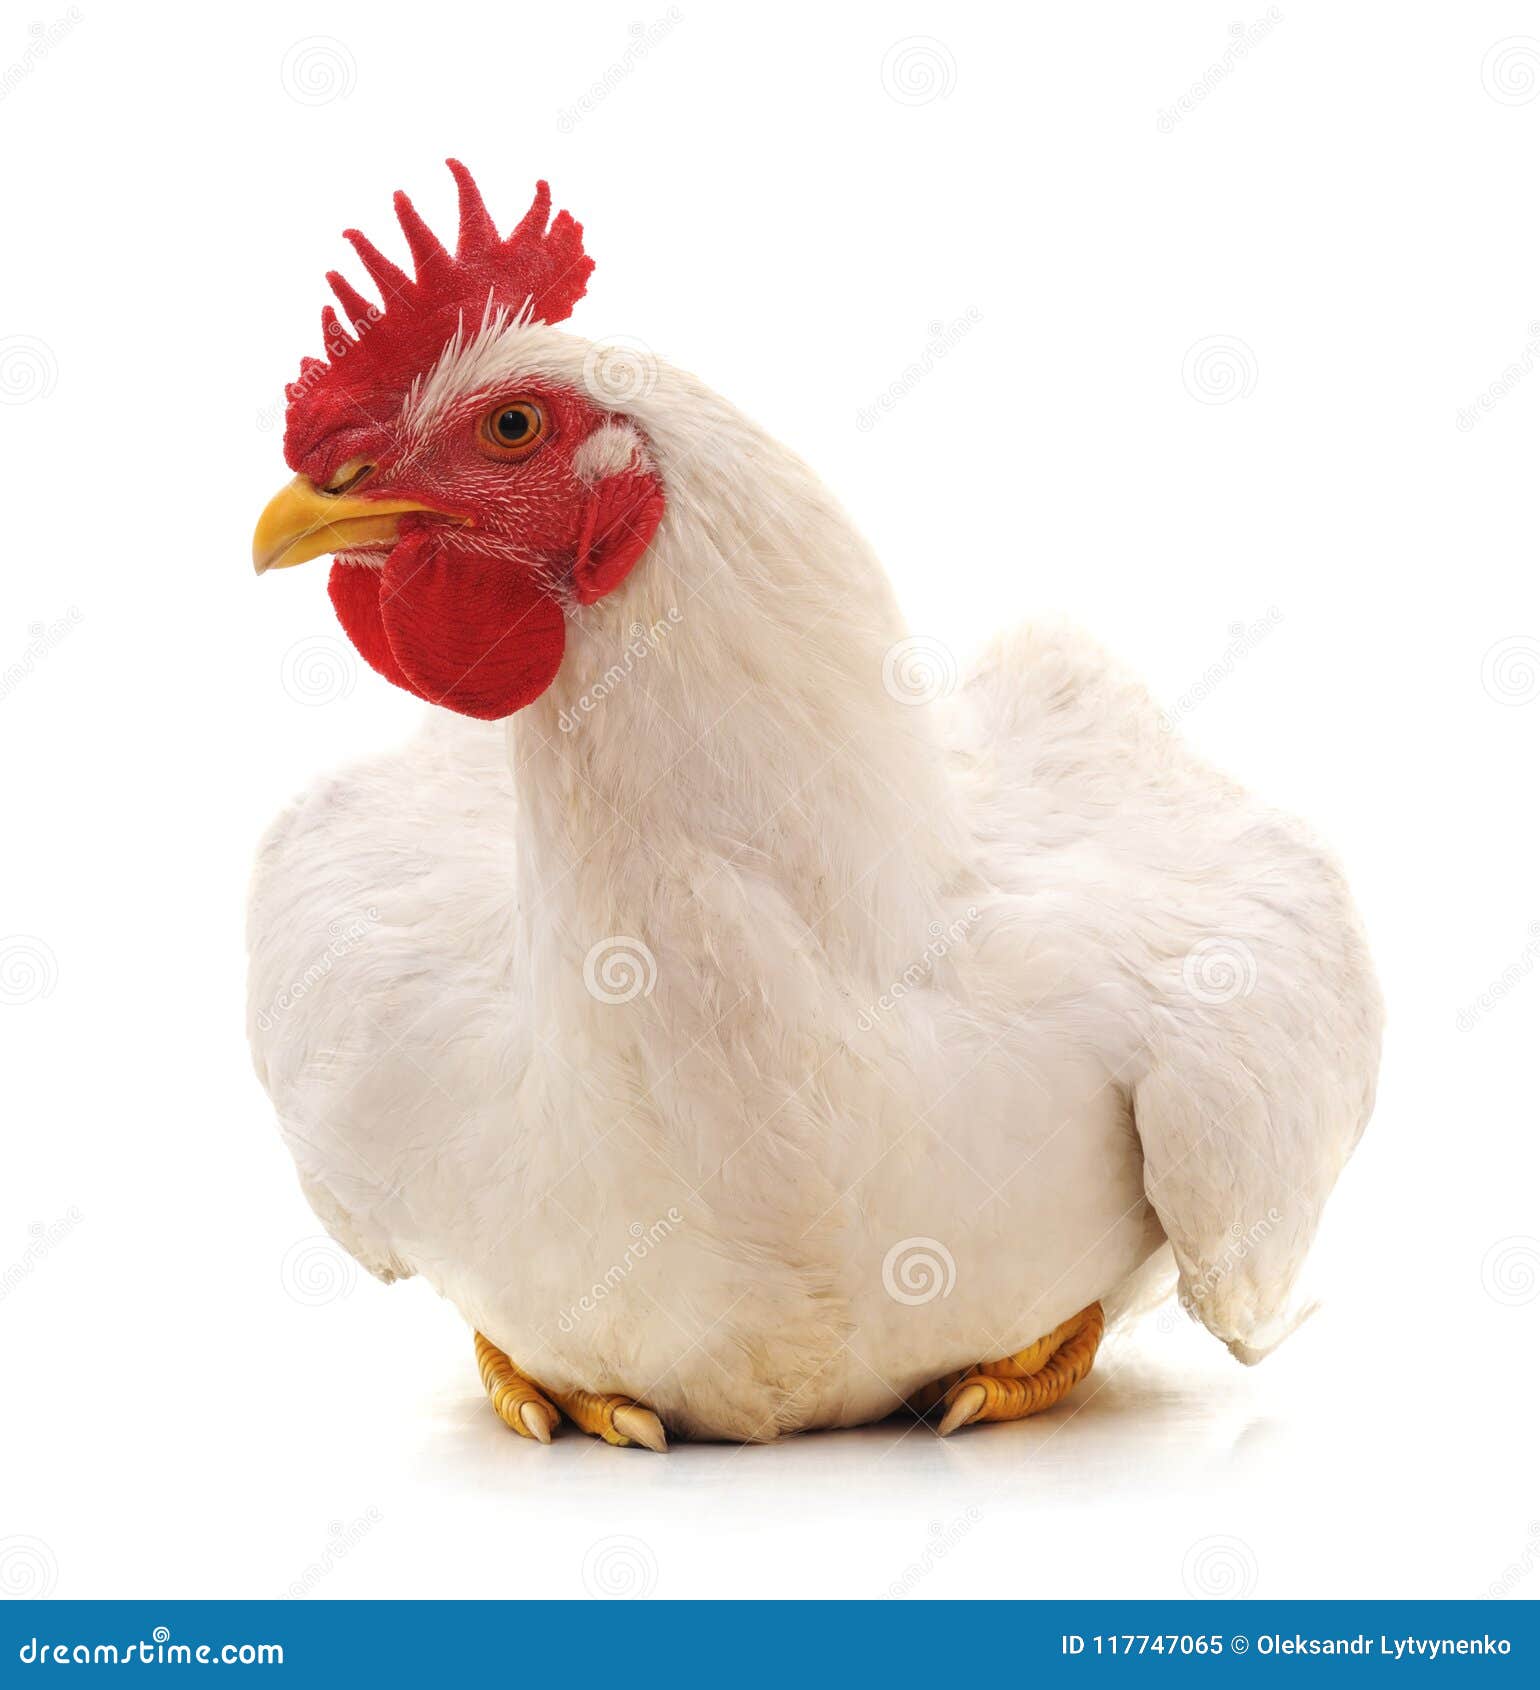 massive white cock